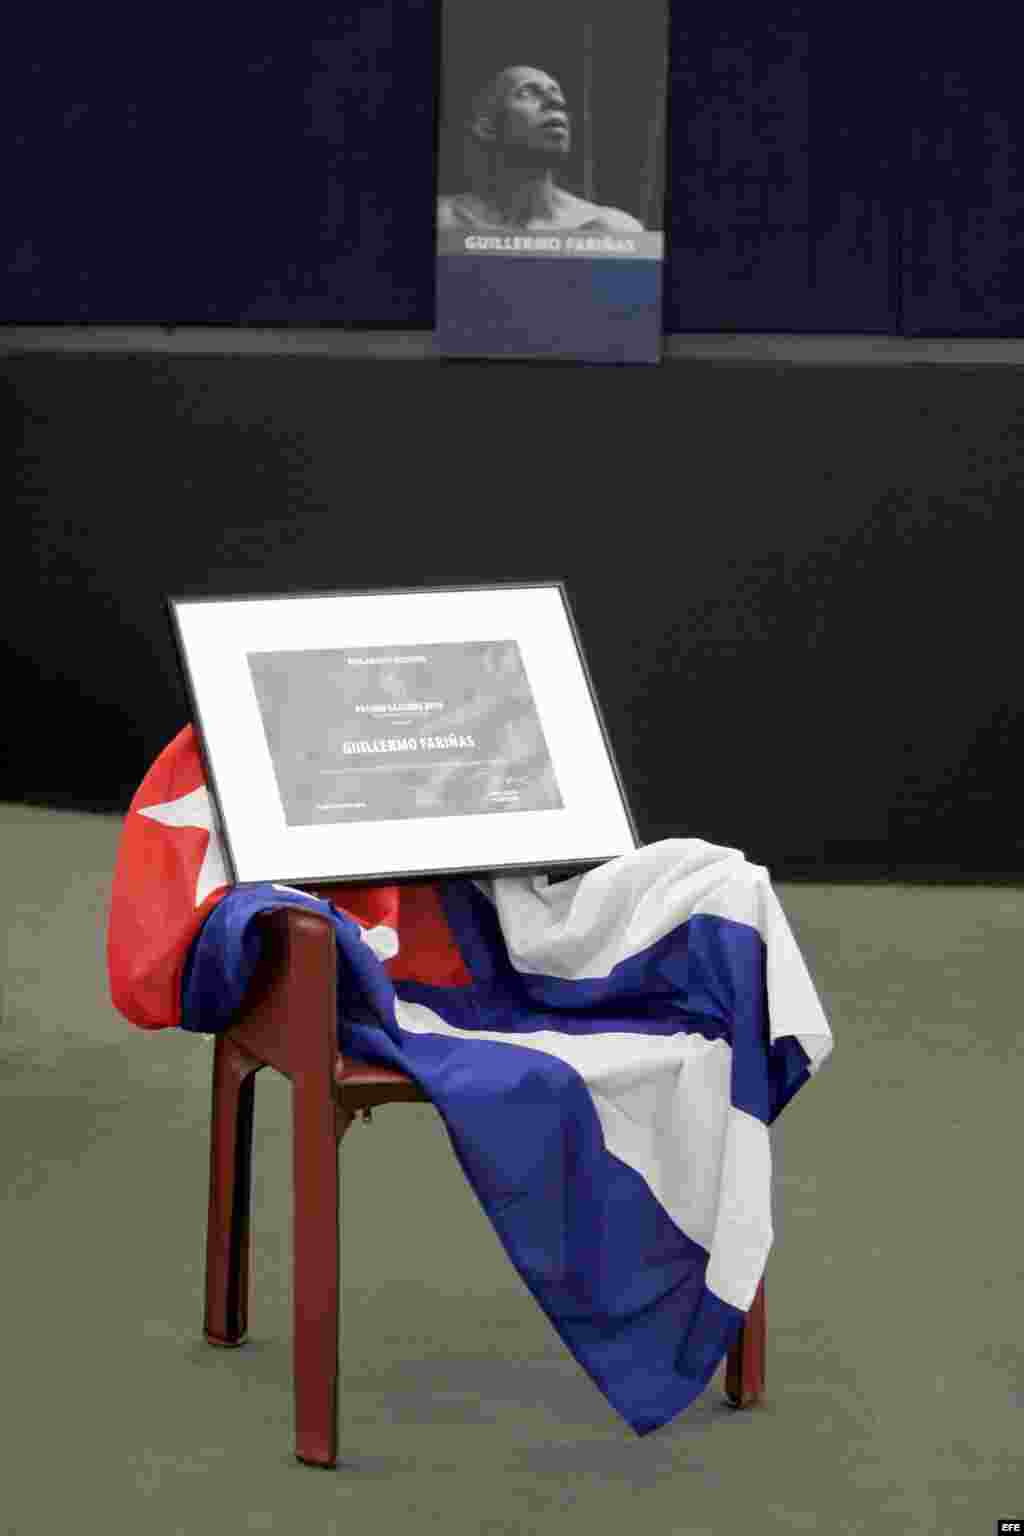 La silla reservada al disidente cubano Guillermo Fariñas permanece vacía durante la ceremonia de entrega del premio Sájarov 2010 del Parlamento Europeo a la libertad de conciencia.